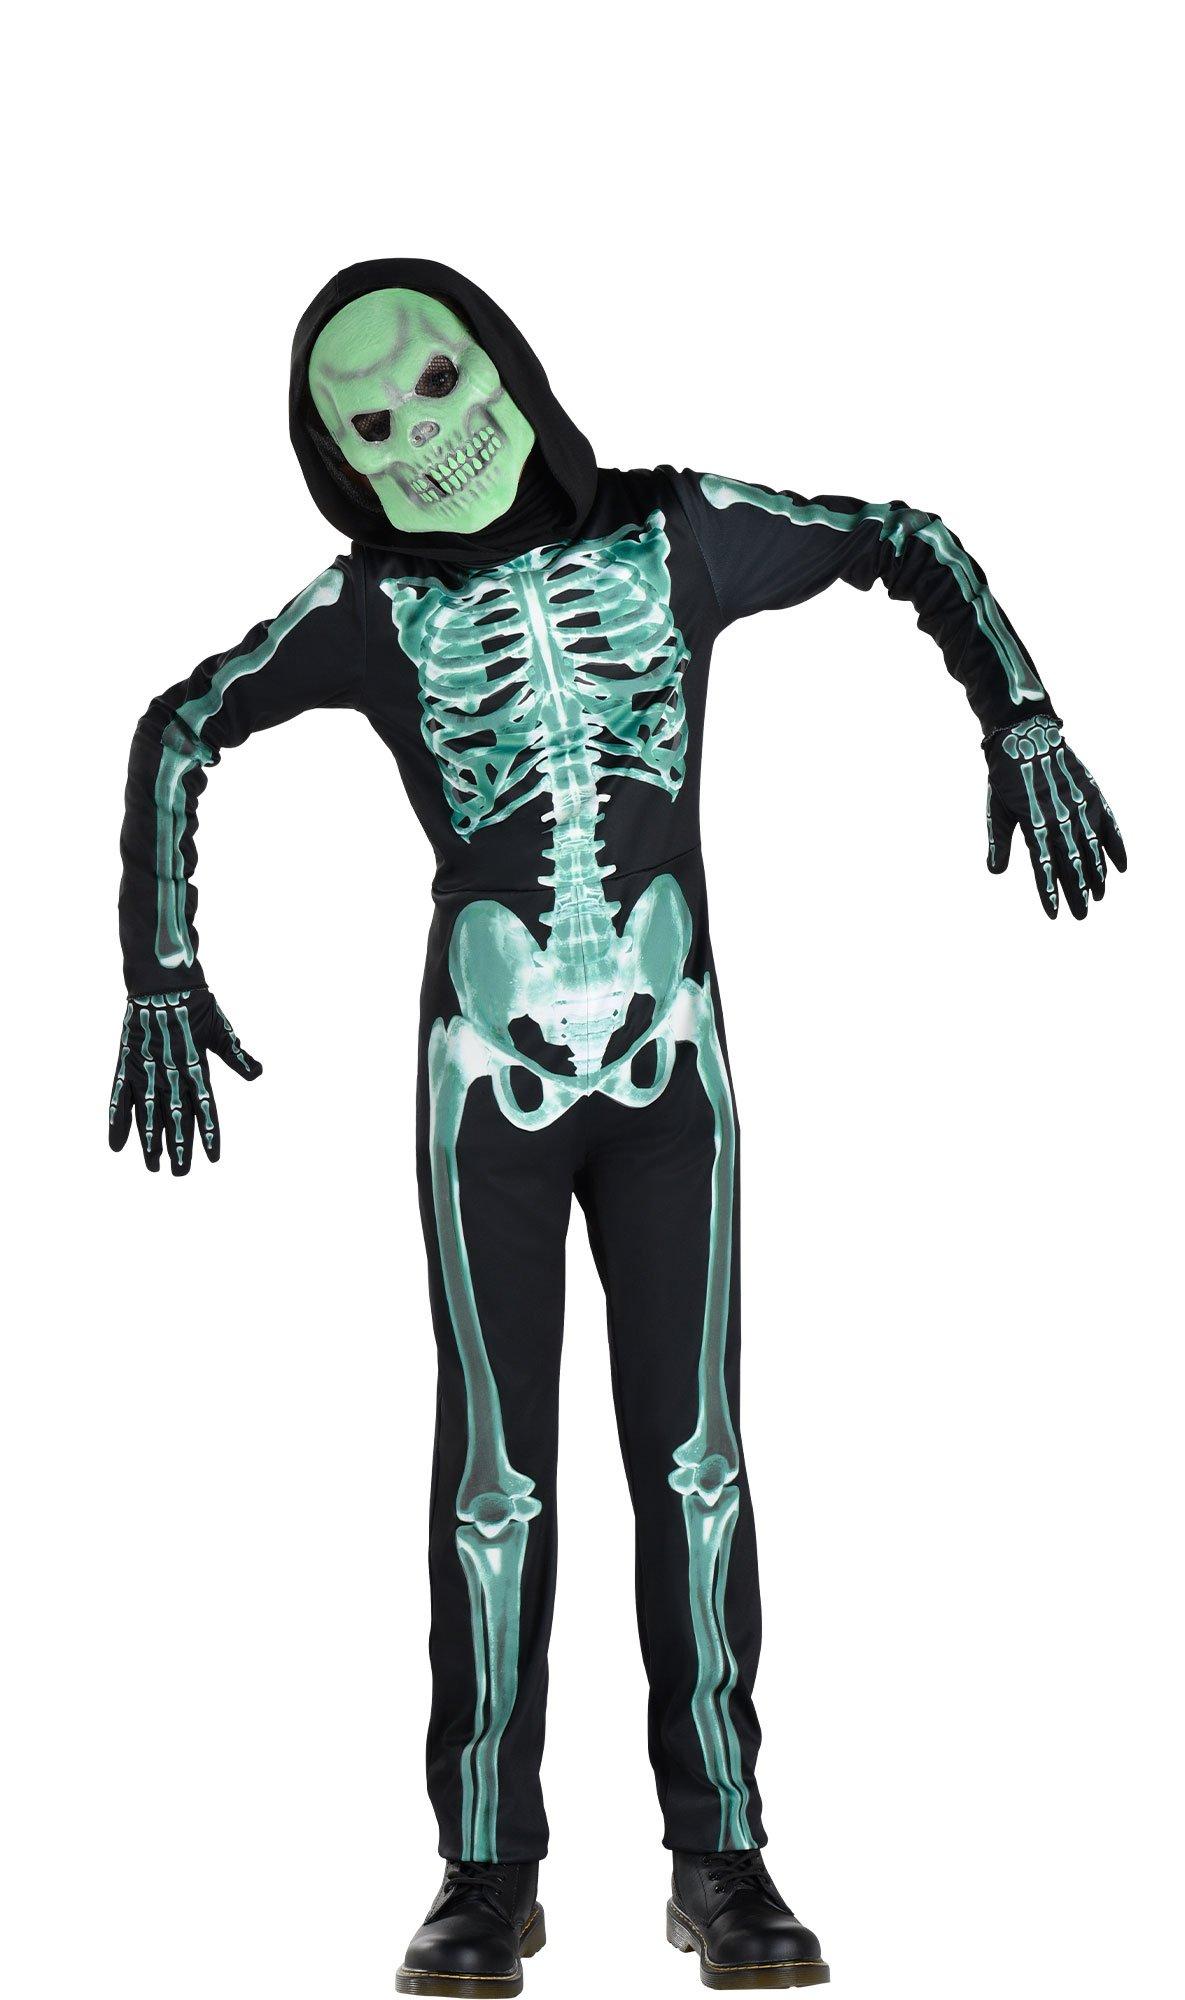 narre Bebrejde med undtagelse af Skeleton Costumes - Onesies, Bodysuits & More | Party City